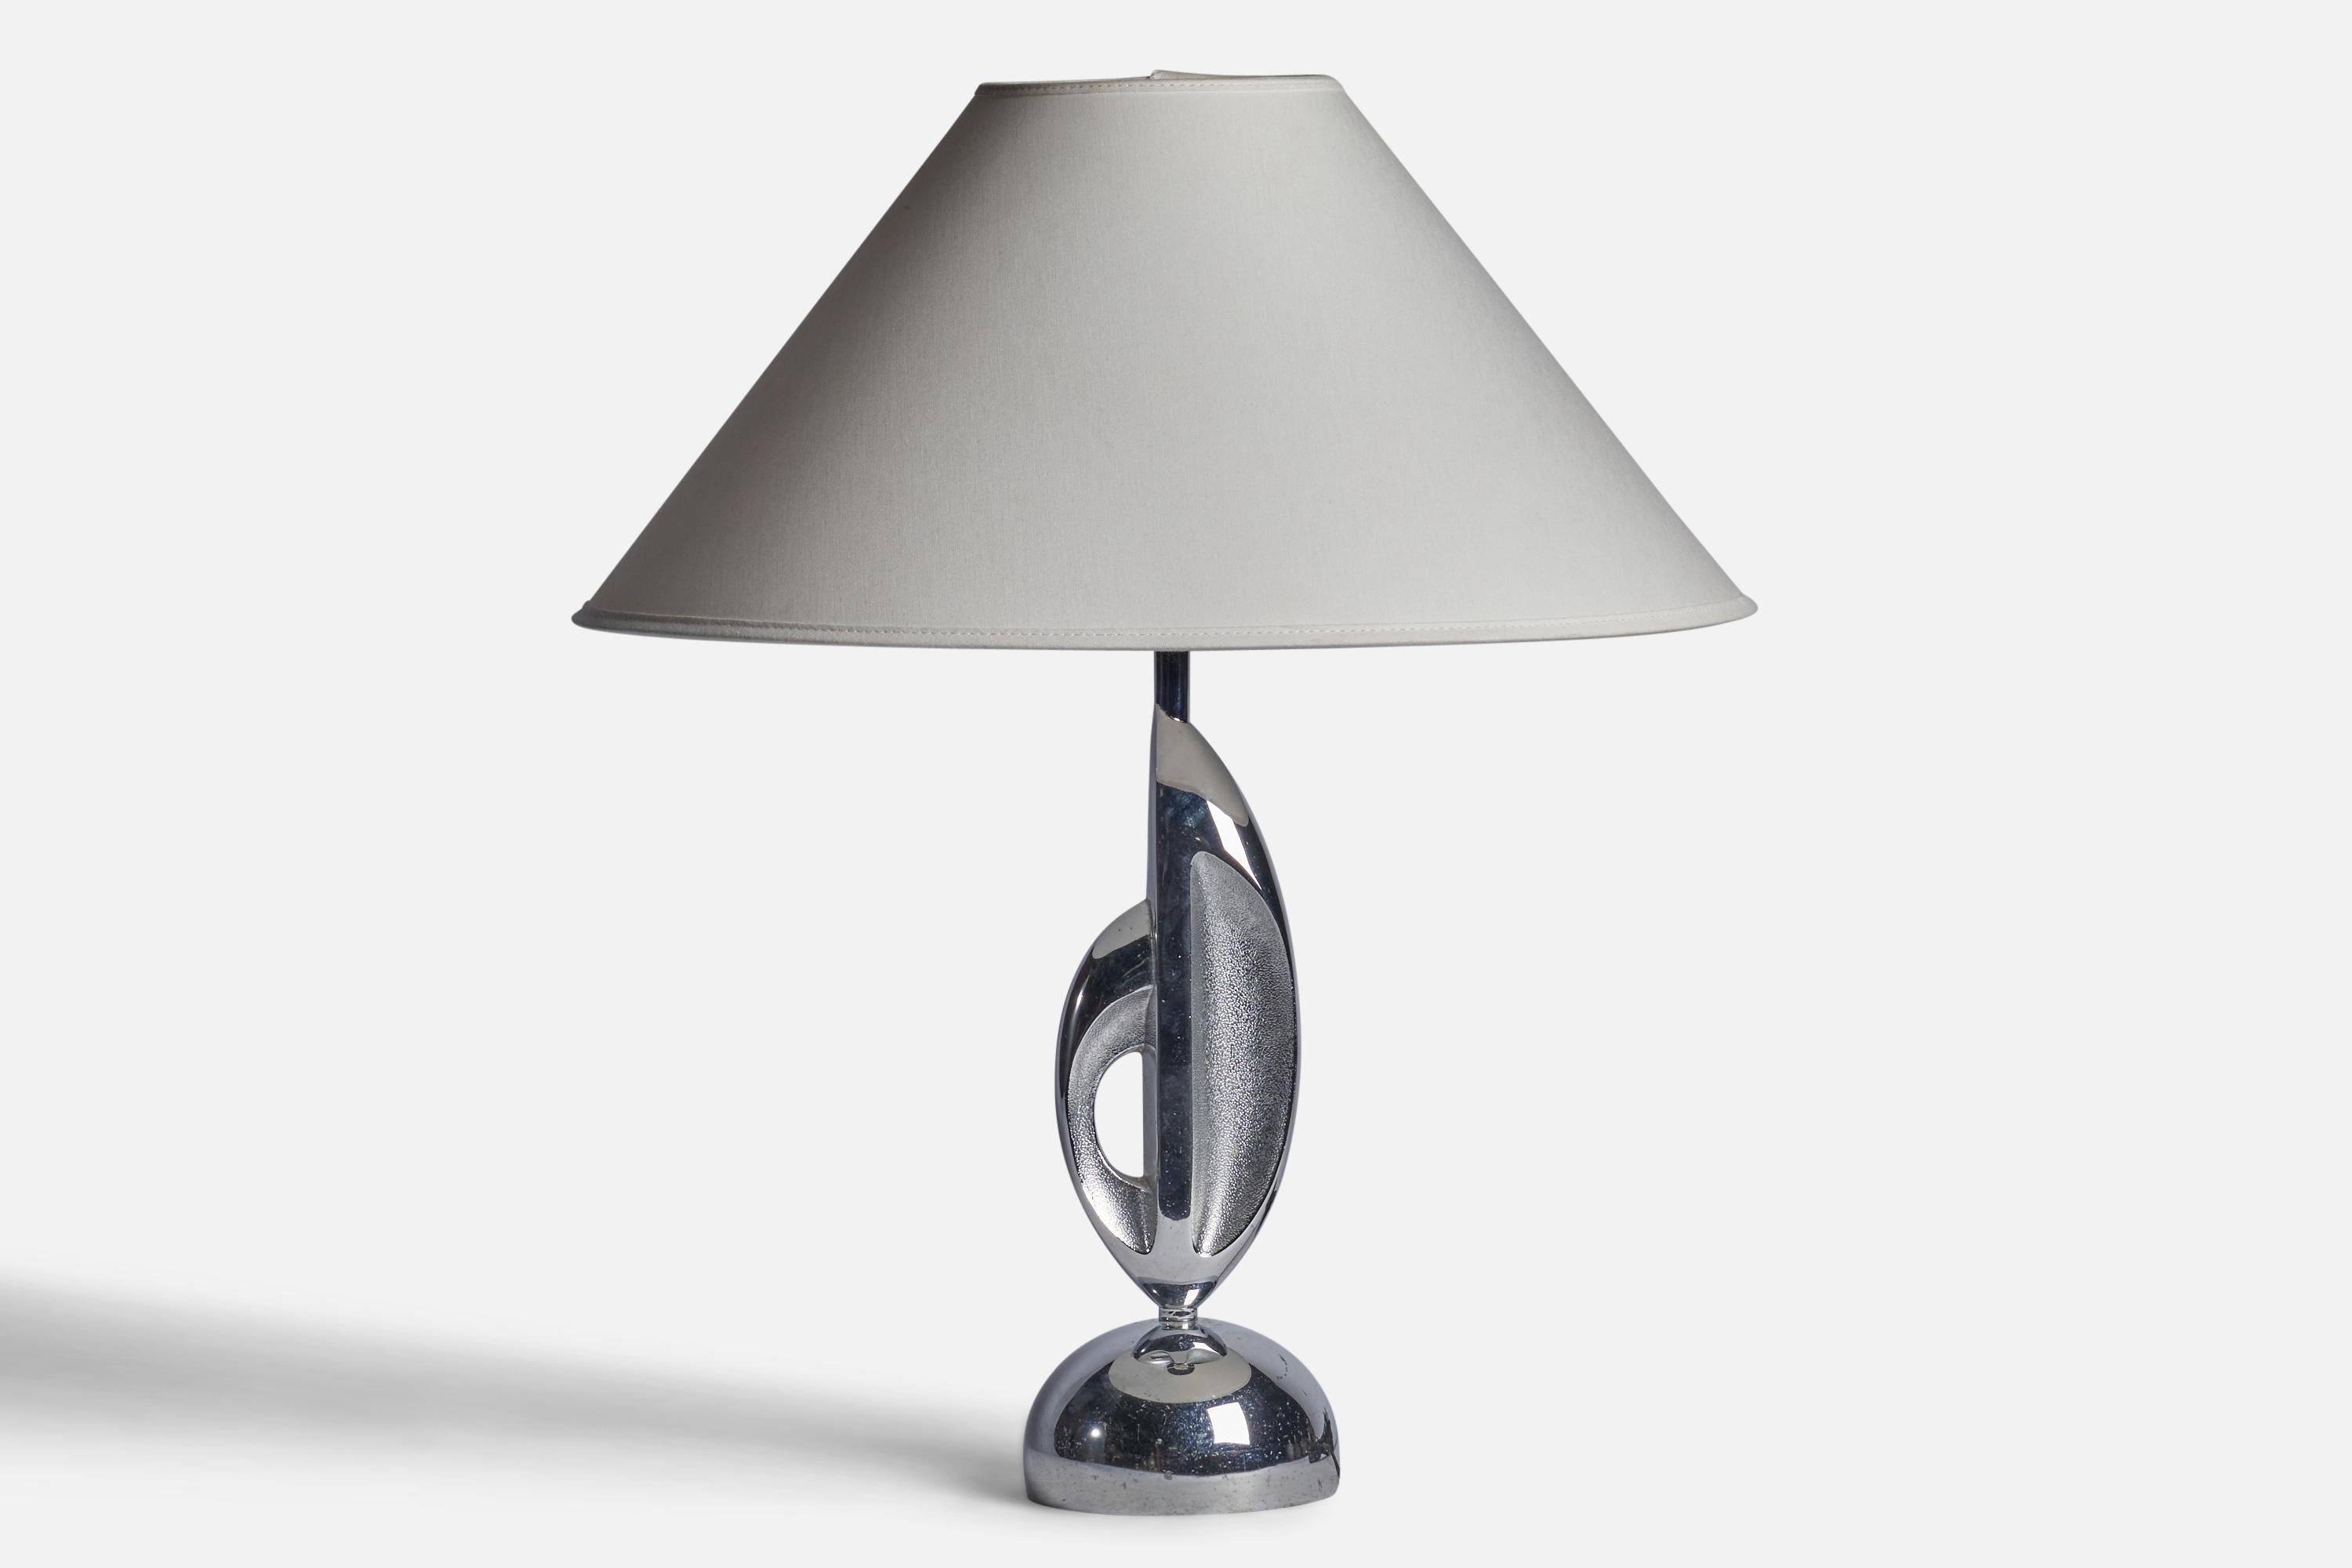 Lampe de table en métal chromé conçue et produite aux États-Unis, vers les années 1930.

Dimensions de la lampe (pouces) : 14.5